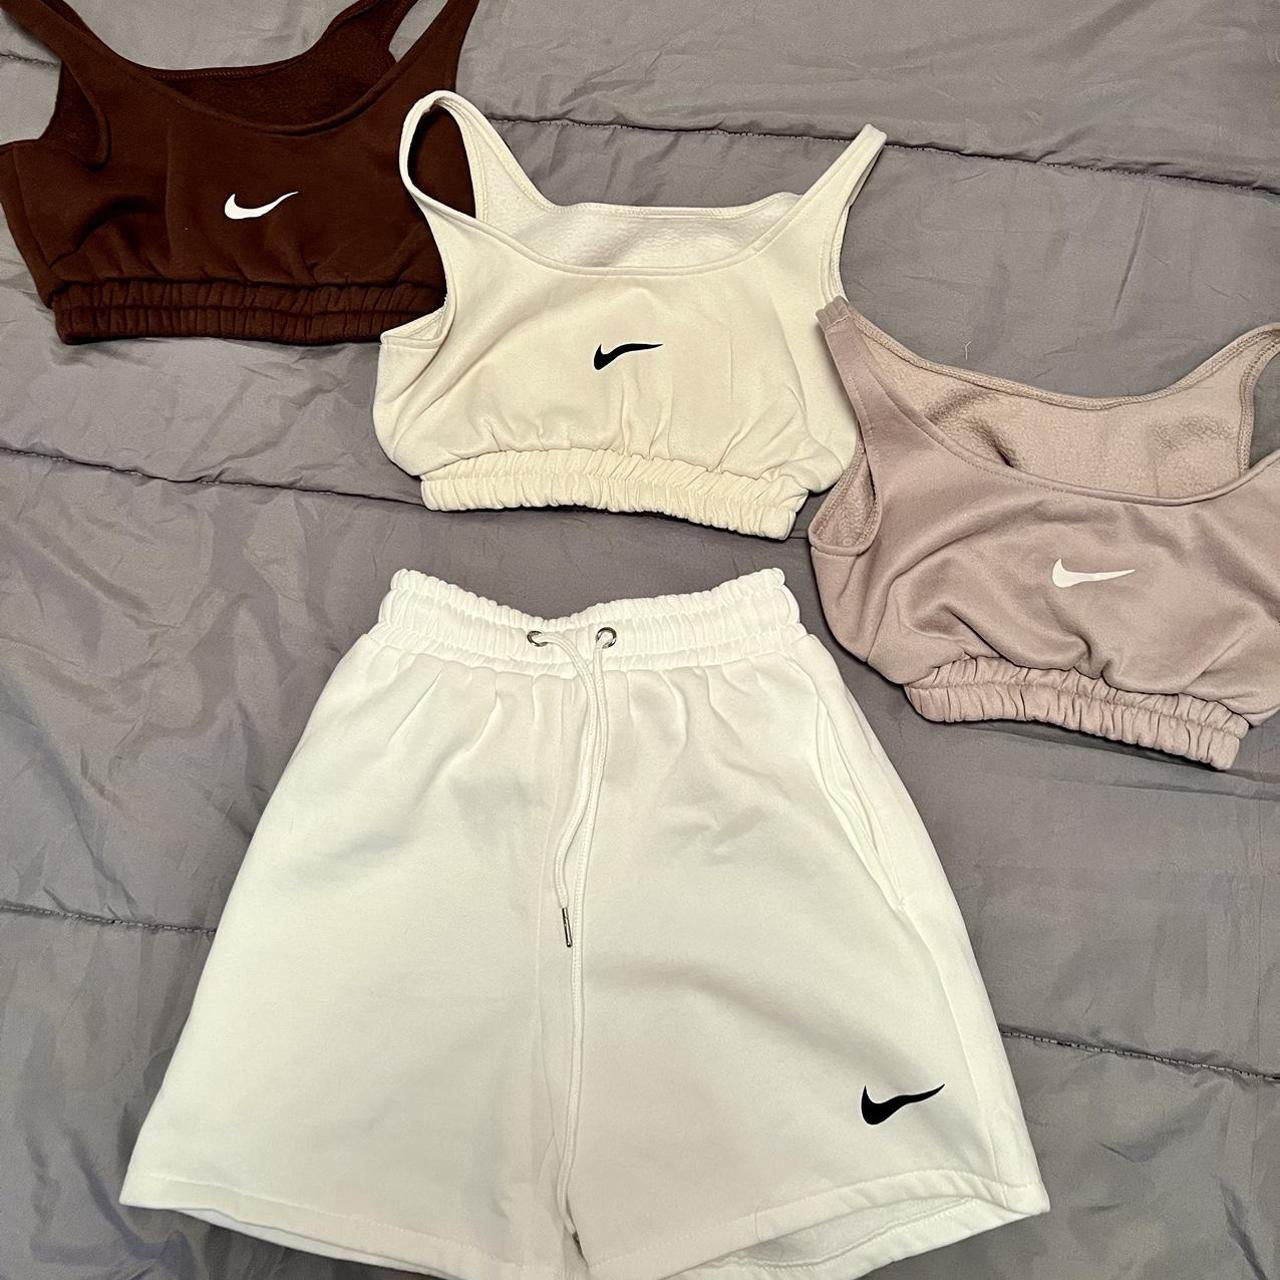 Nike sets✔️ shorts sold separately; dm for details✨ - Depop